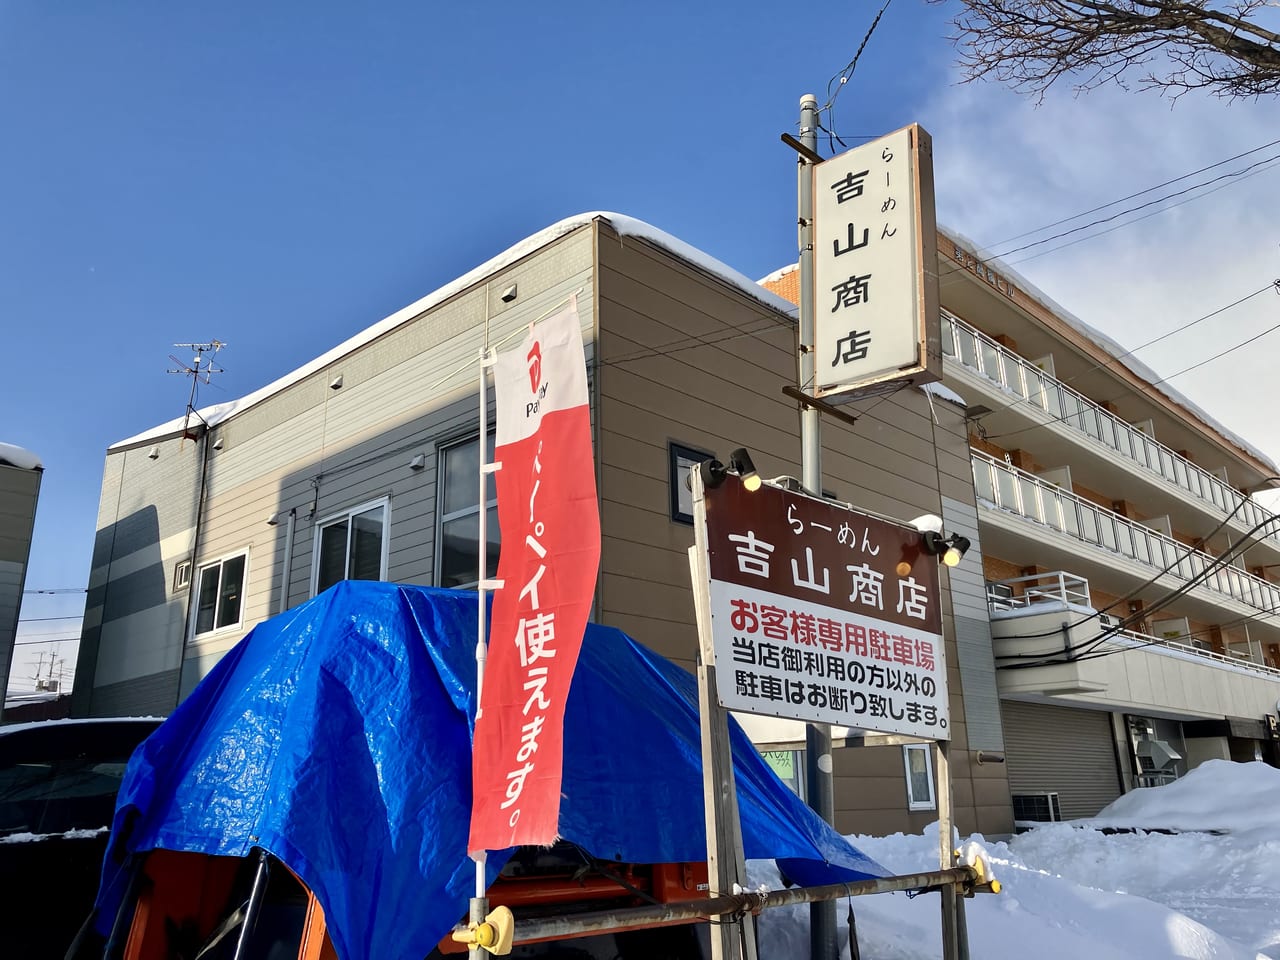 寒い冬にはラーメンが食べらさる。札幌の人気店「吉山商店」の熱々ラーメンを食べてみた。